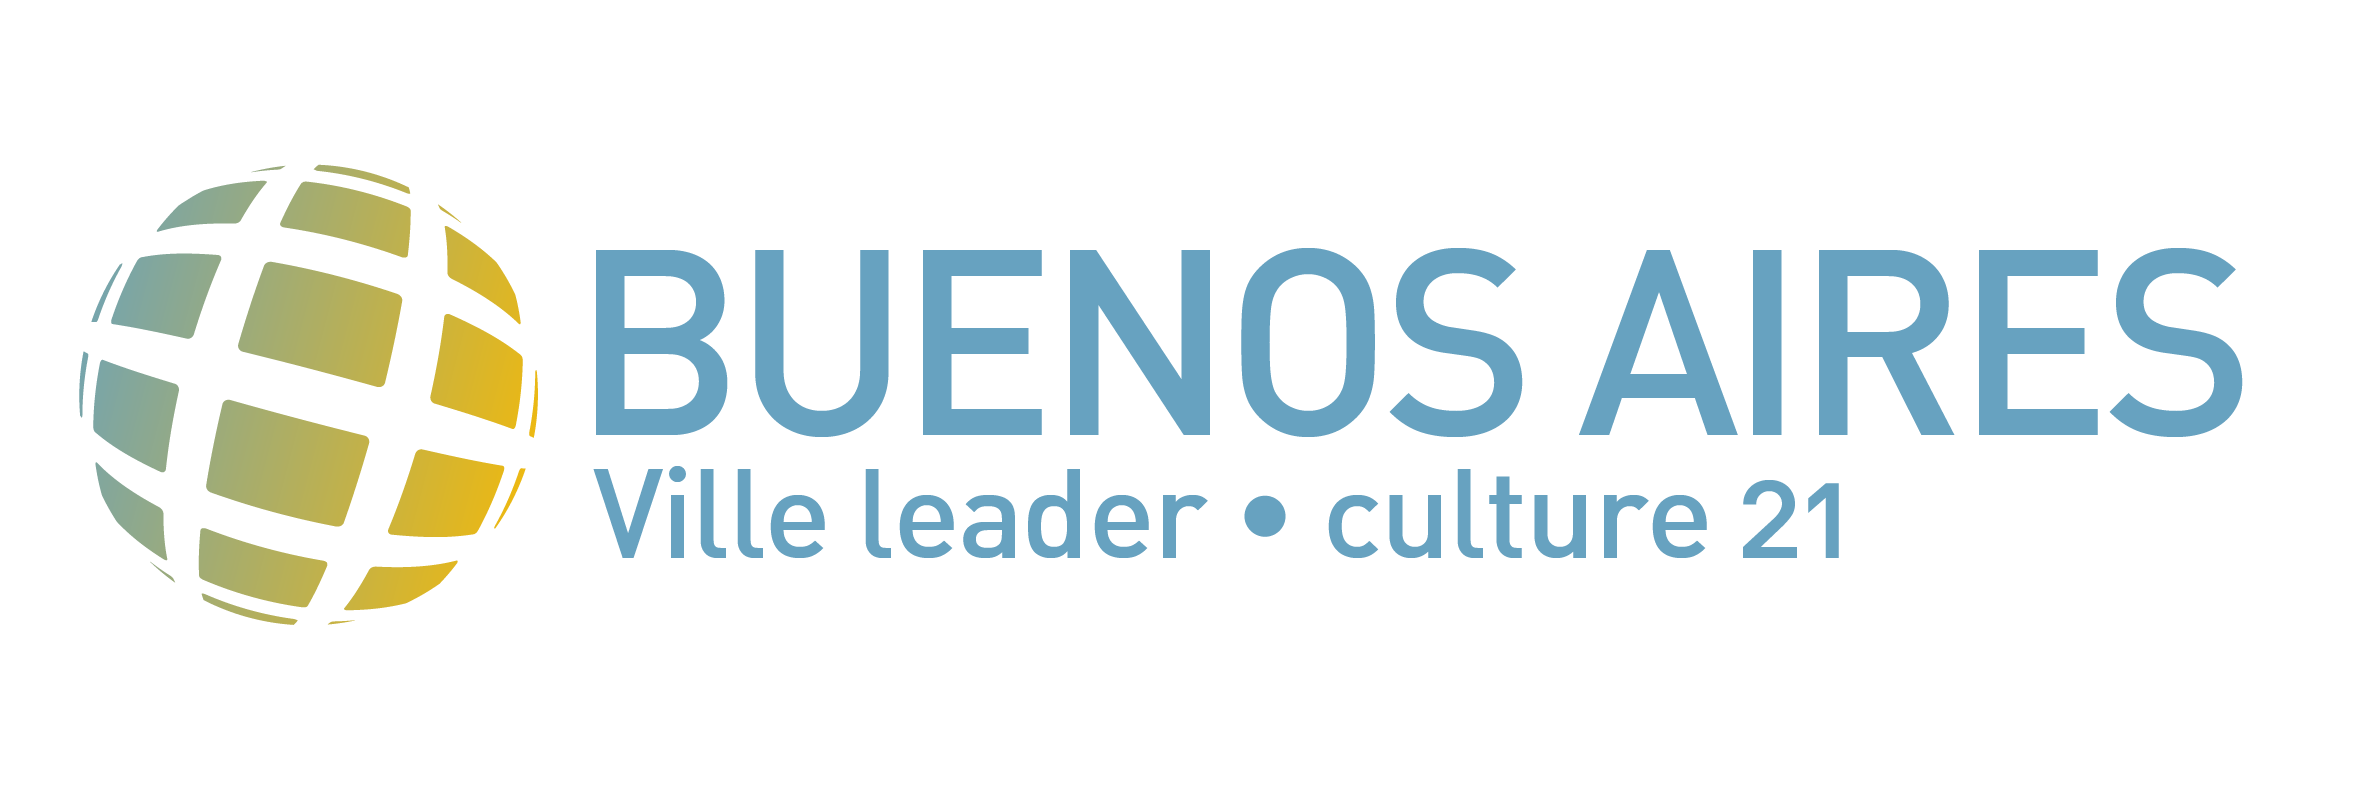 Logo Buenos Aires